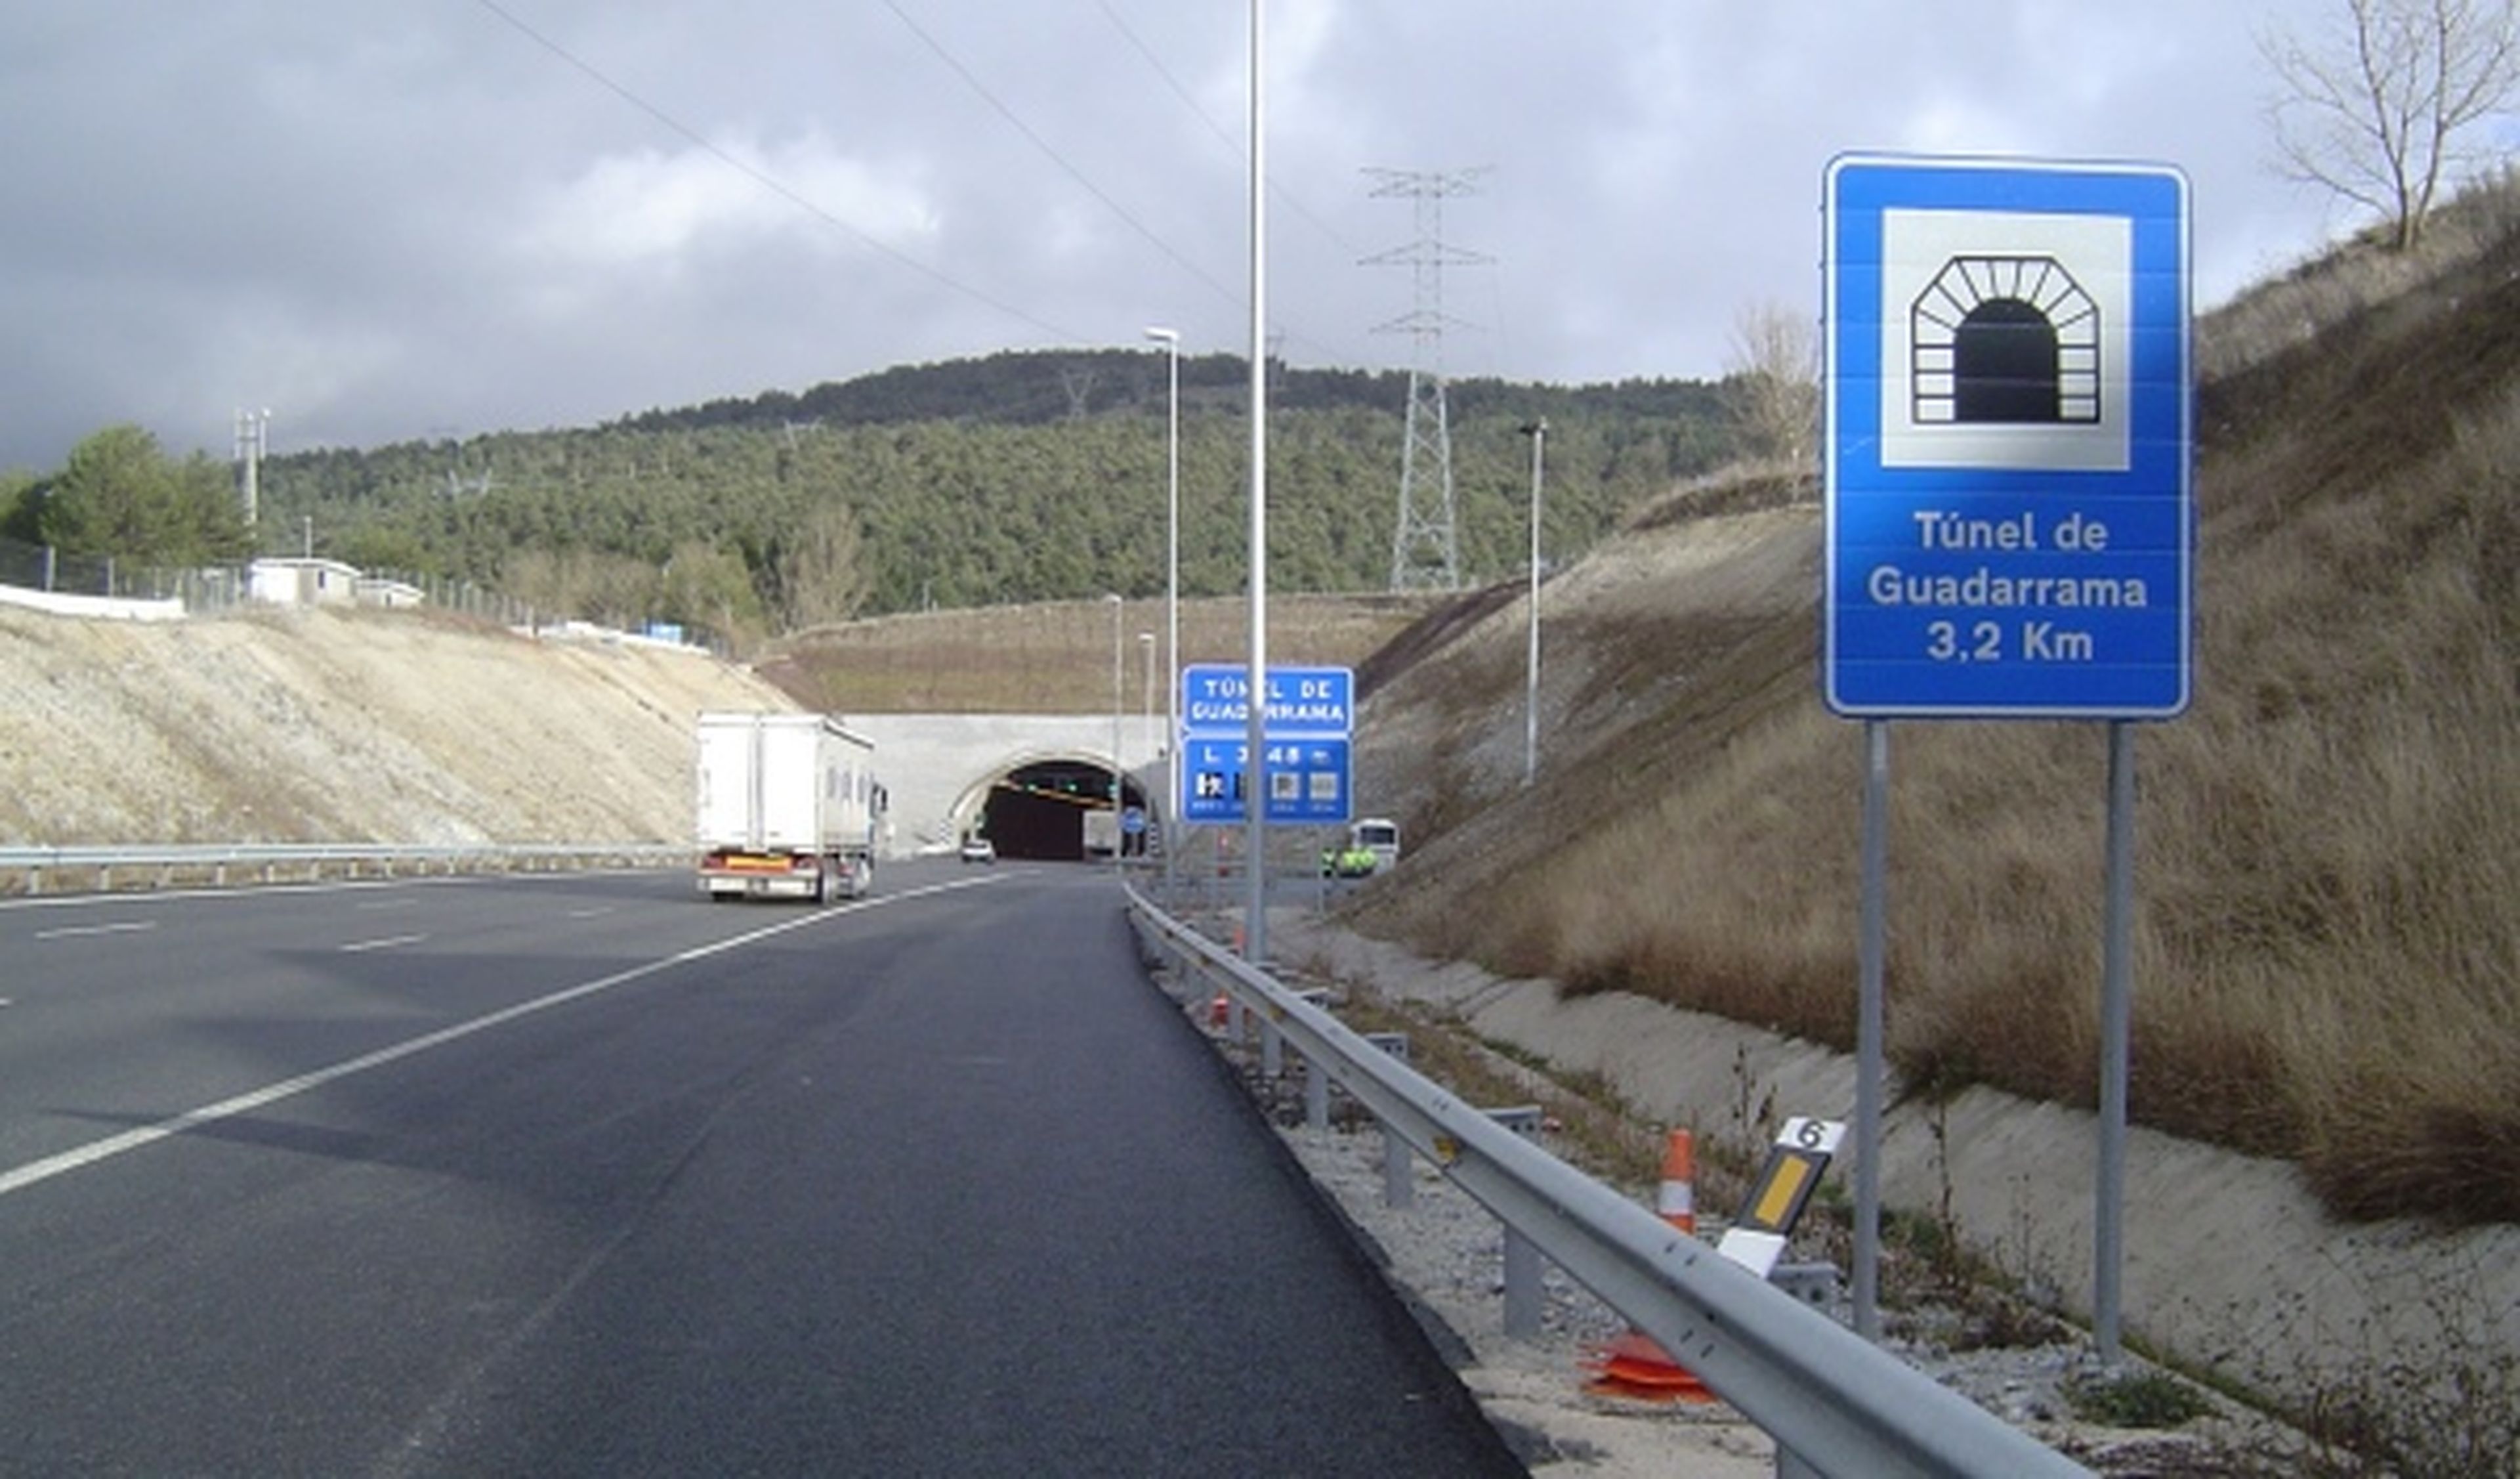 Nuevos radares de tramo en el túnel de Guadarrama